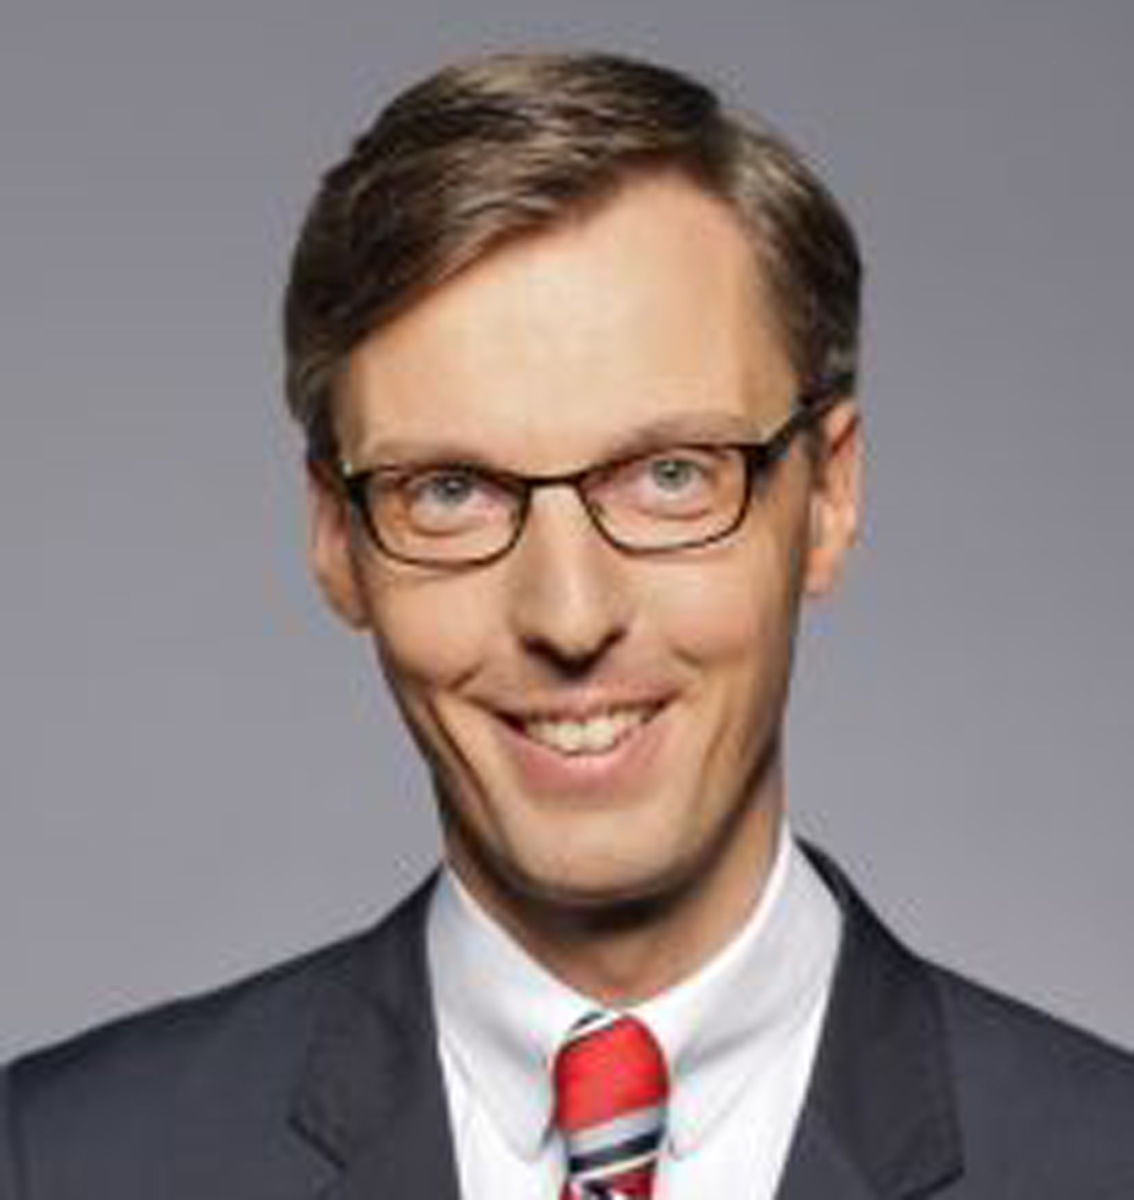 Lars Castellucci für Wiesloch im Bundestag